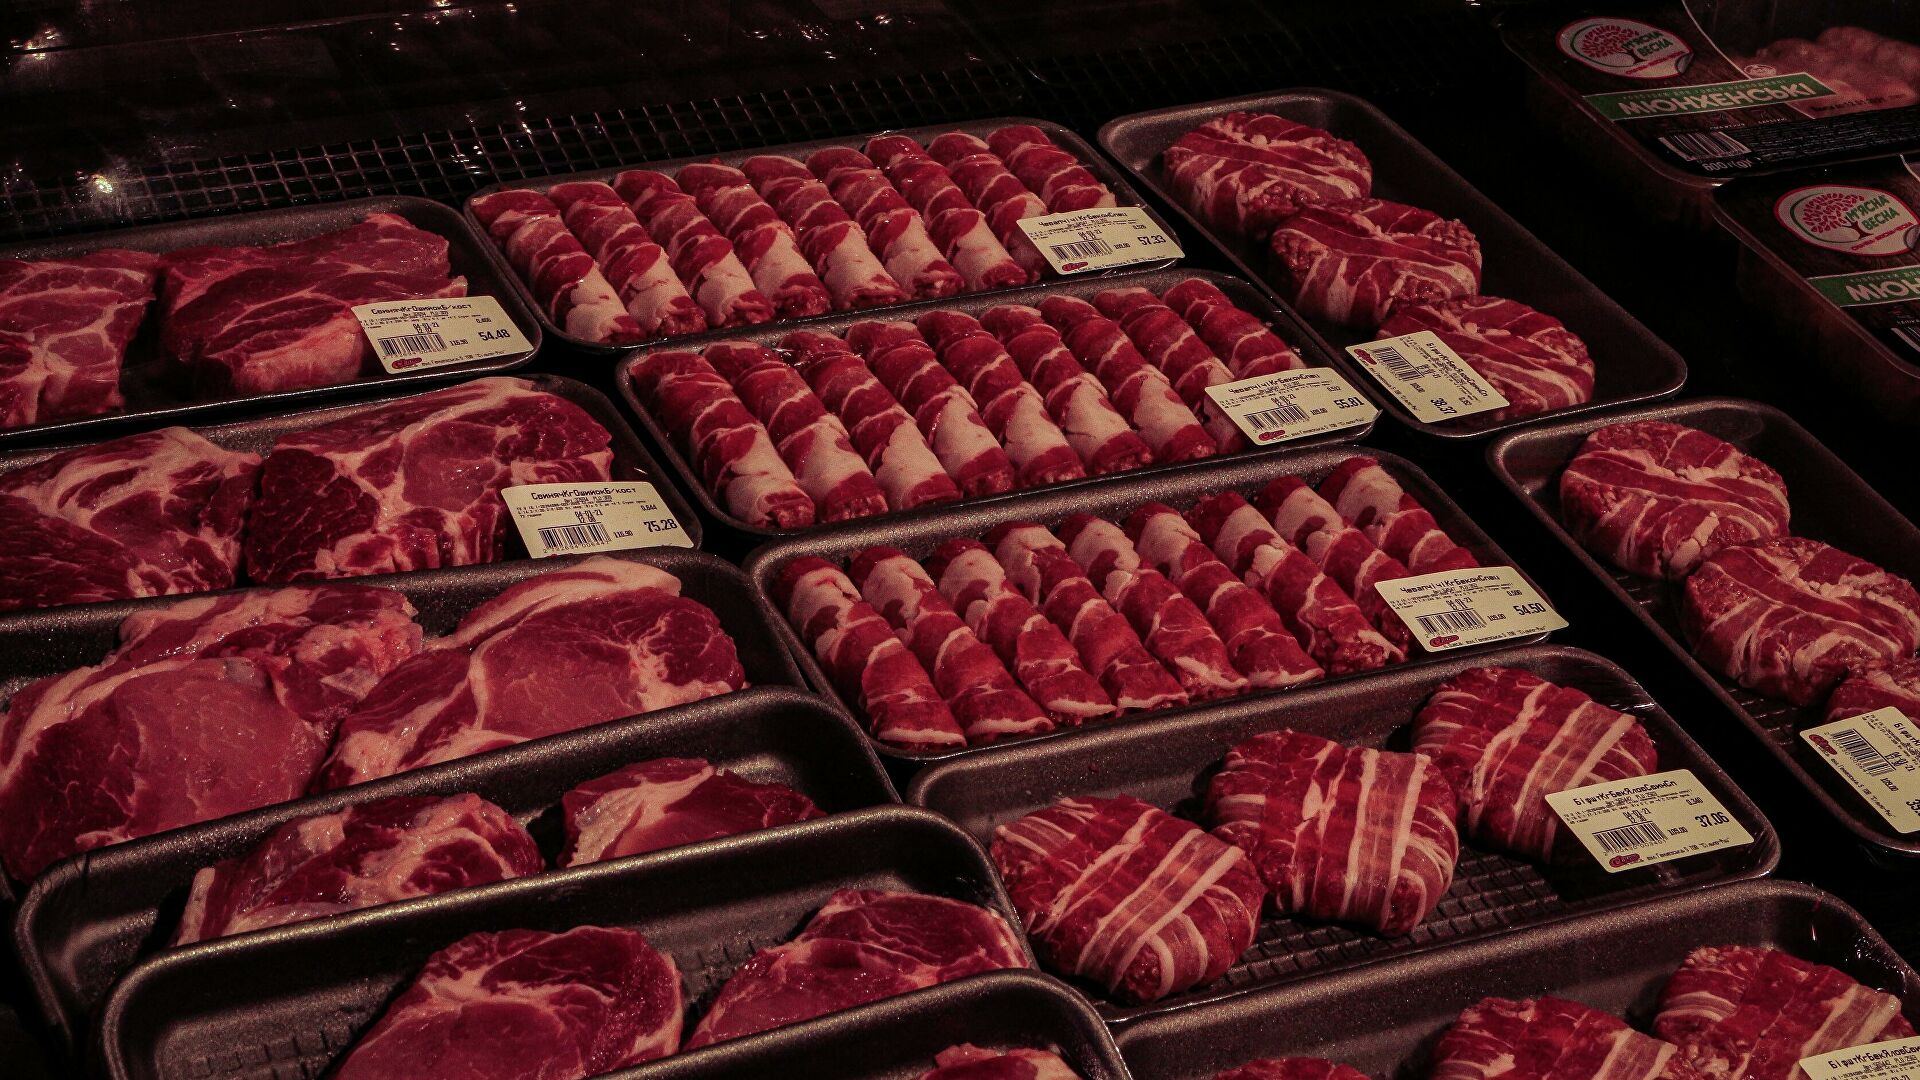 Узбекистан нарастил импорт мяса почти до 24 тысяч тонн - список главных поставщиков